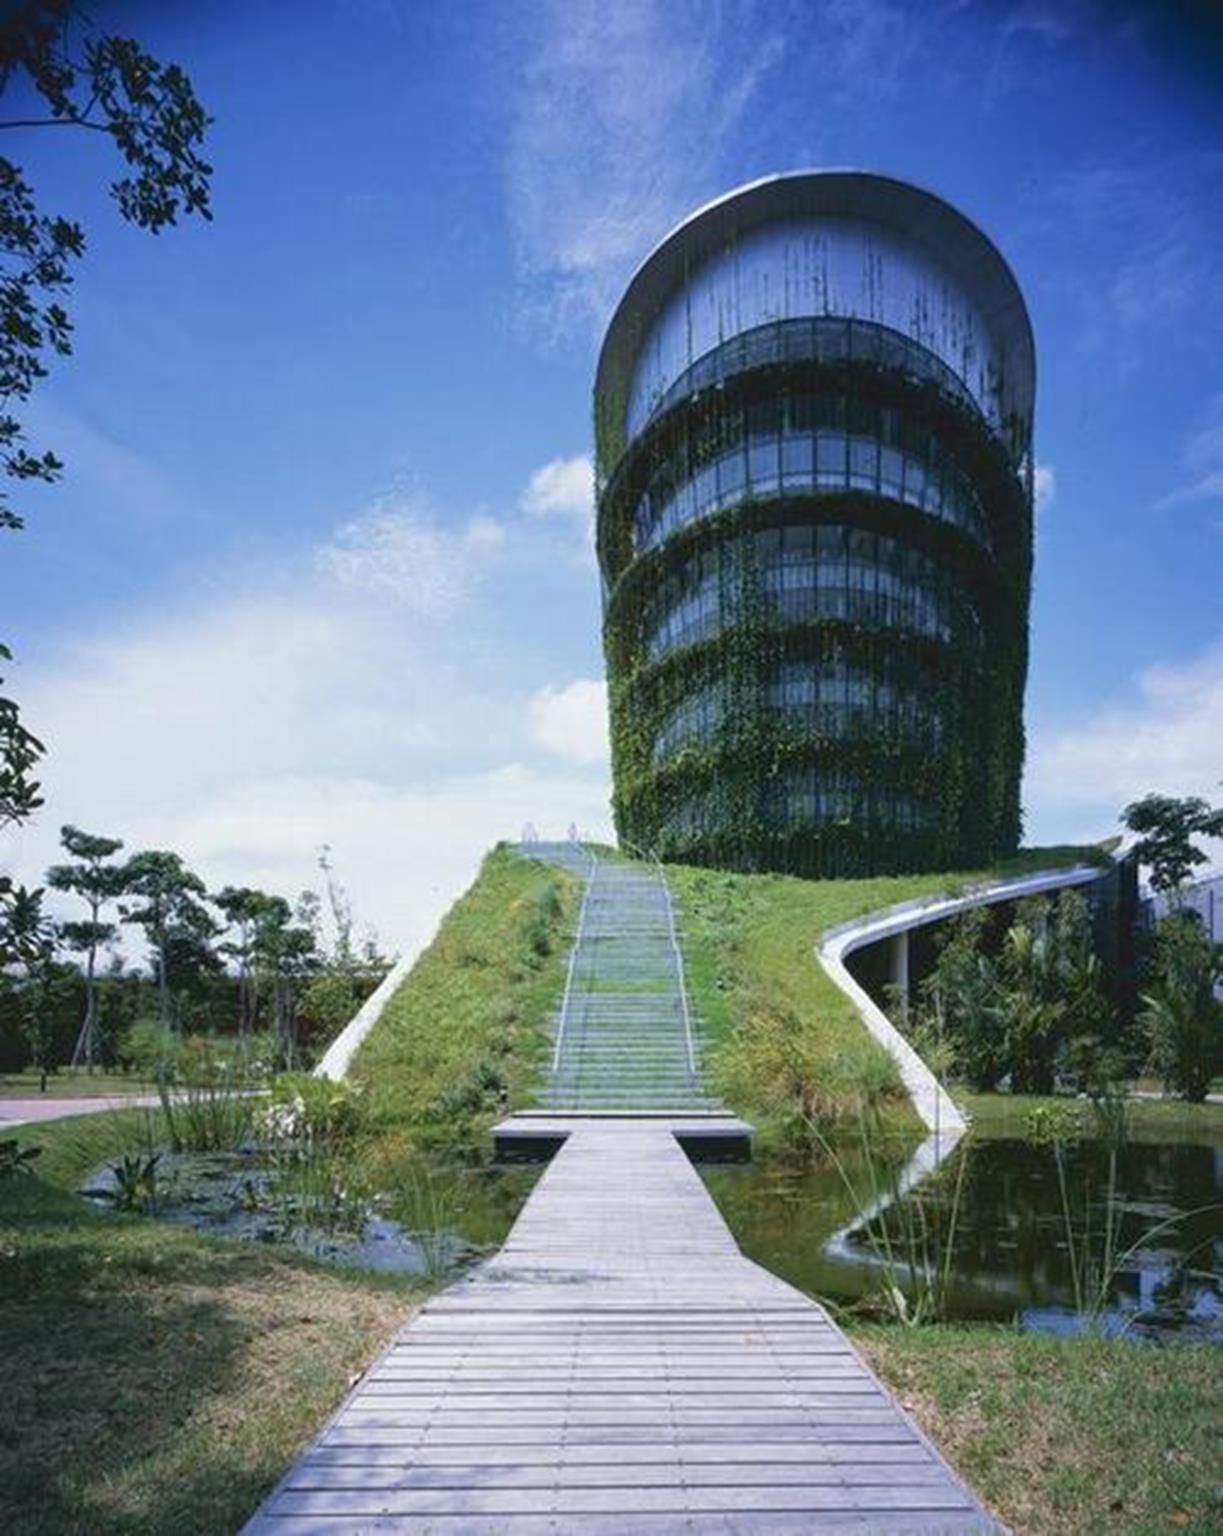 Các kiến trúc sư Malaysia xây dựng một nhà máy công nghiệp thân thiện với môi trường. Nhà máy được bao phủ xung quanh bởi màu xanh của lá cây nhằm giảm lượng khí thải carbon ra môi trường và tăng sự hấp thụ nước mưa để làm mát không gian bên trong.